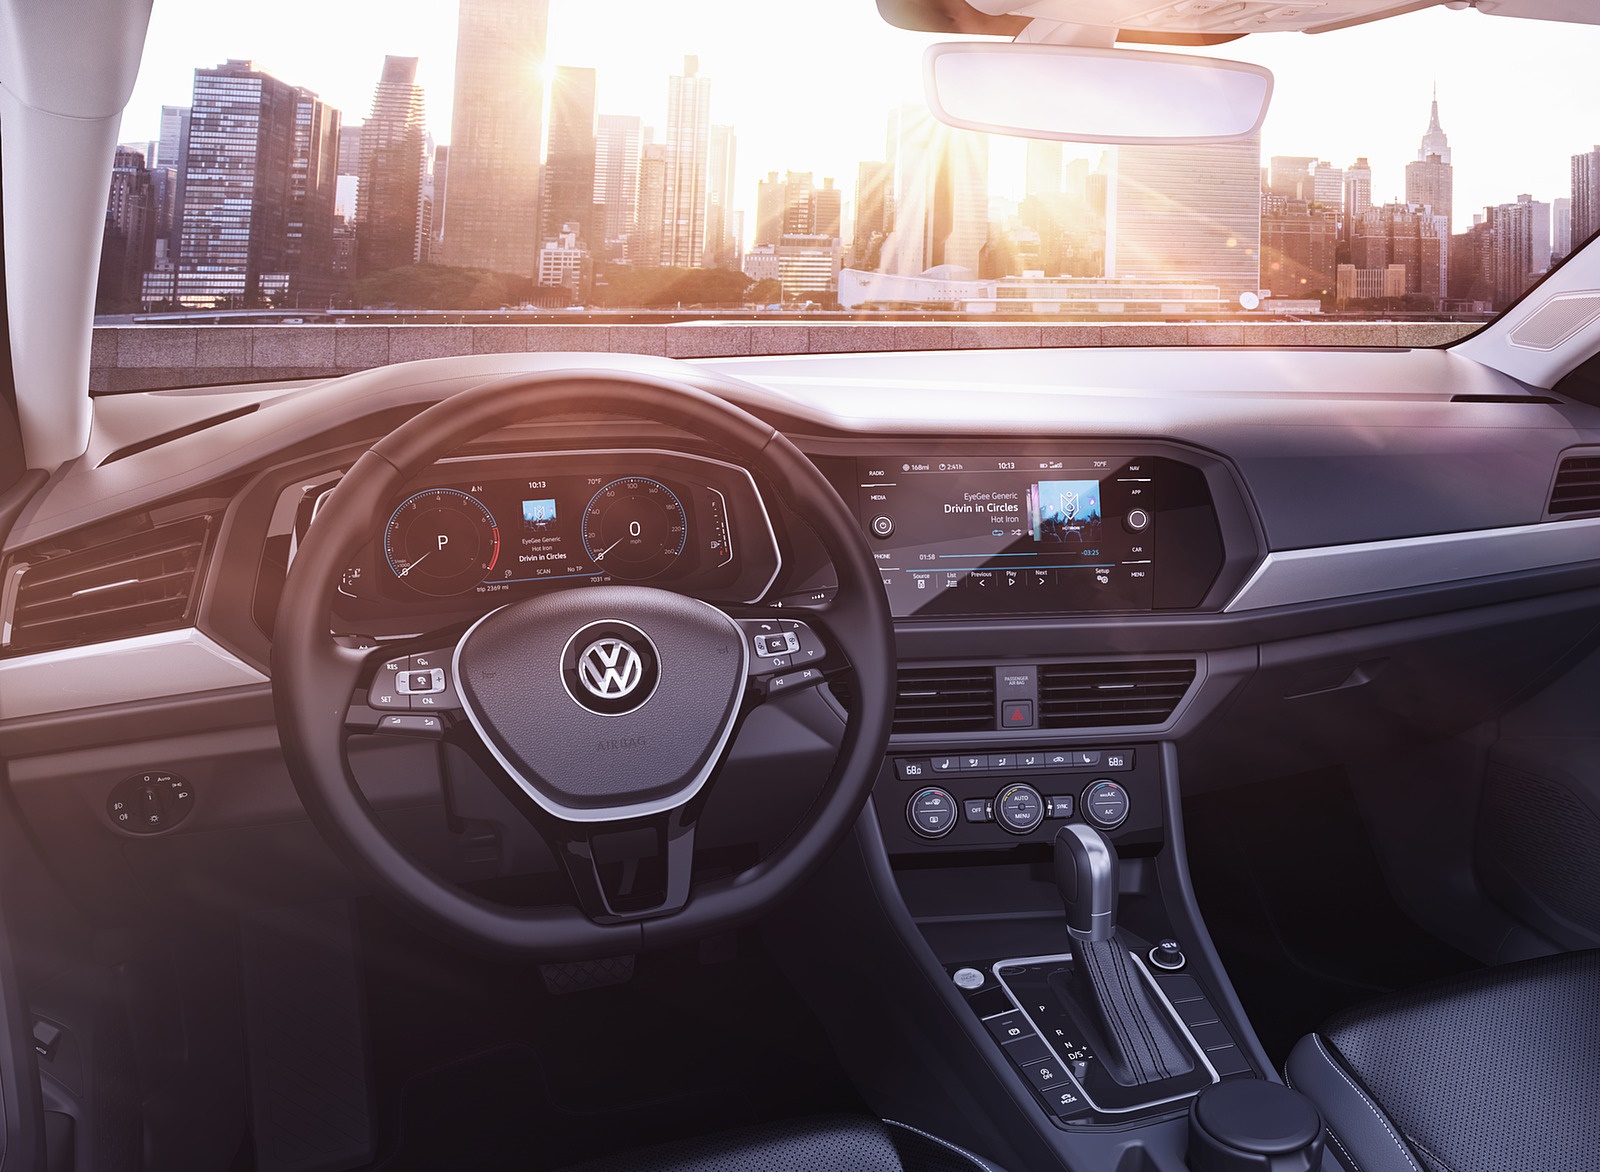 2019 Volkswagen Jetta Interior Cockpit Wallpapers #37 of 85